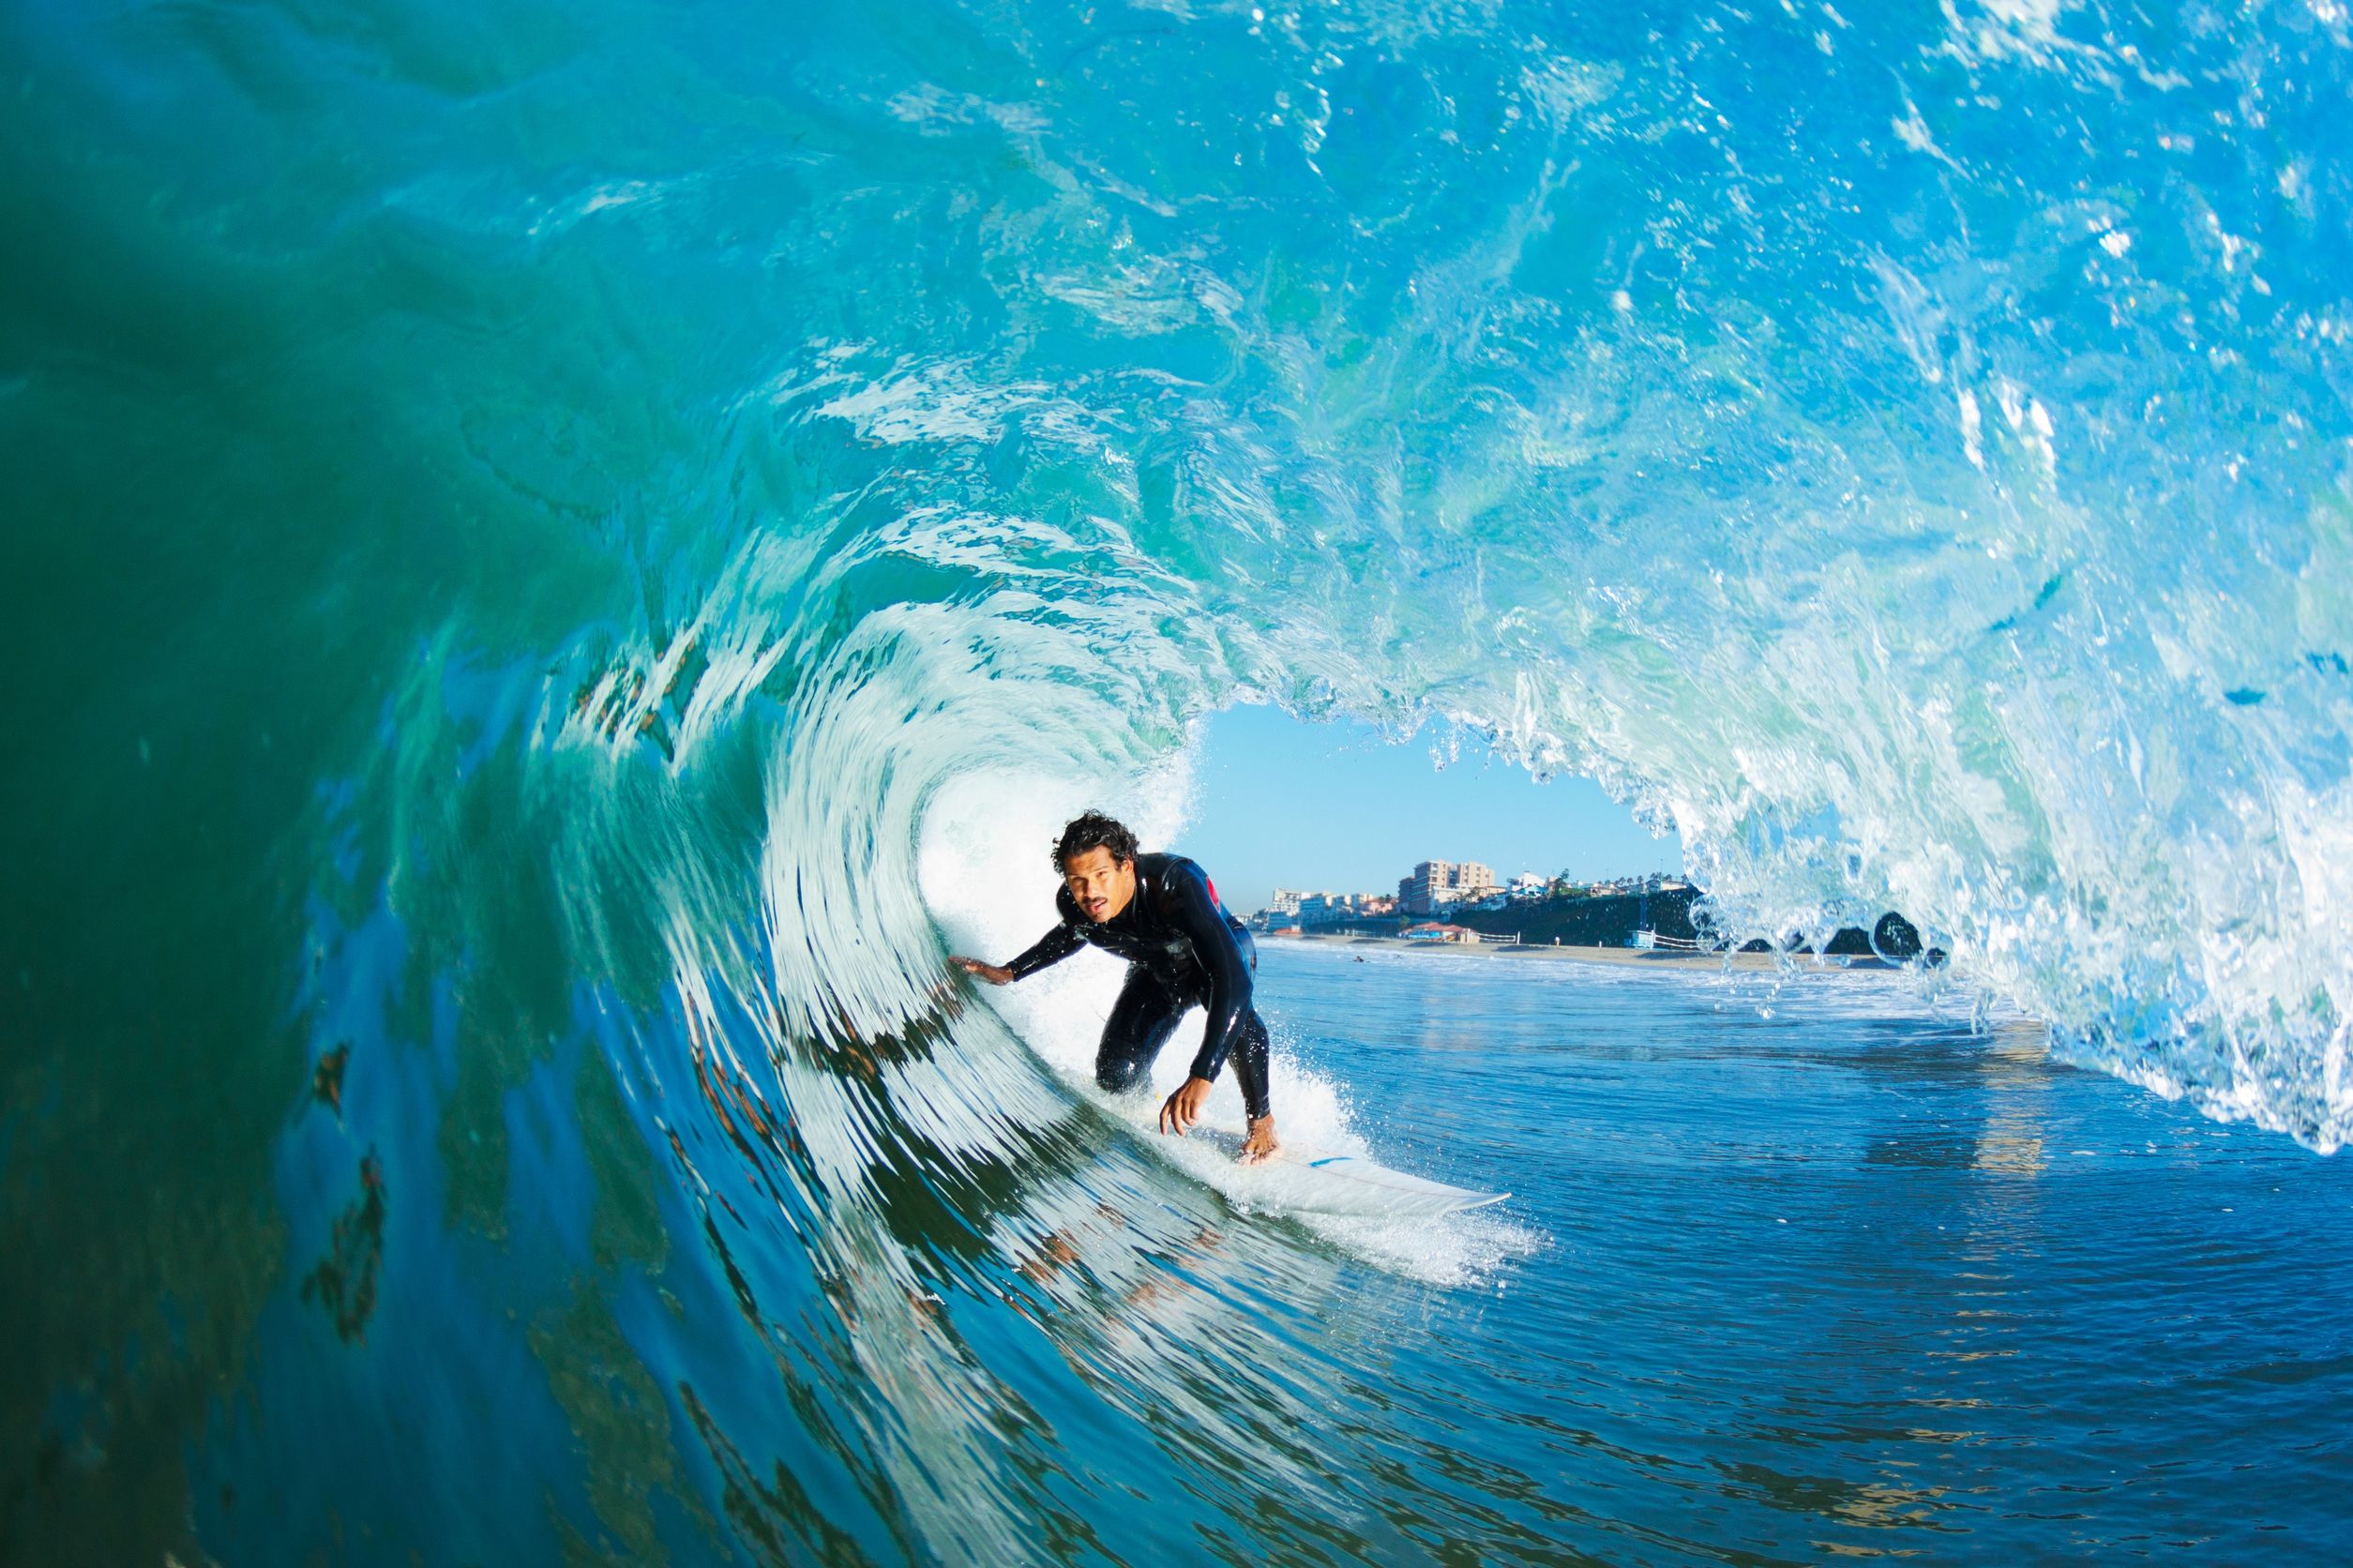 11945985-surfer-sur-blue-ocean-wave